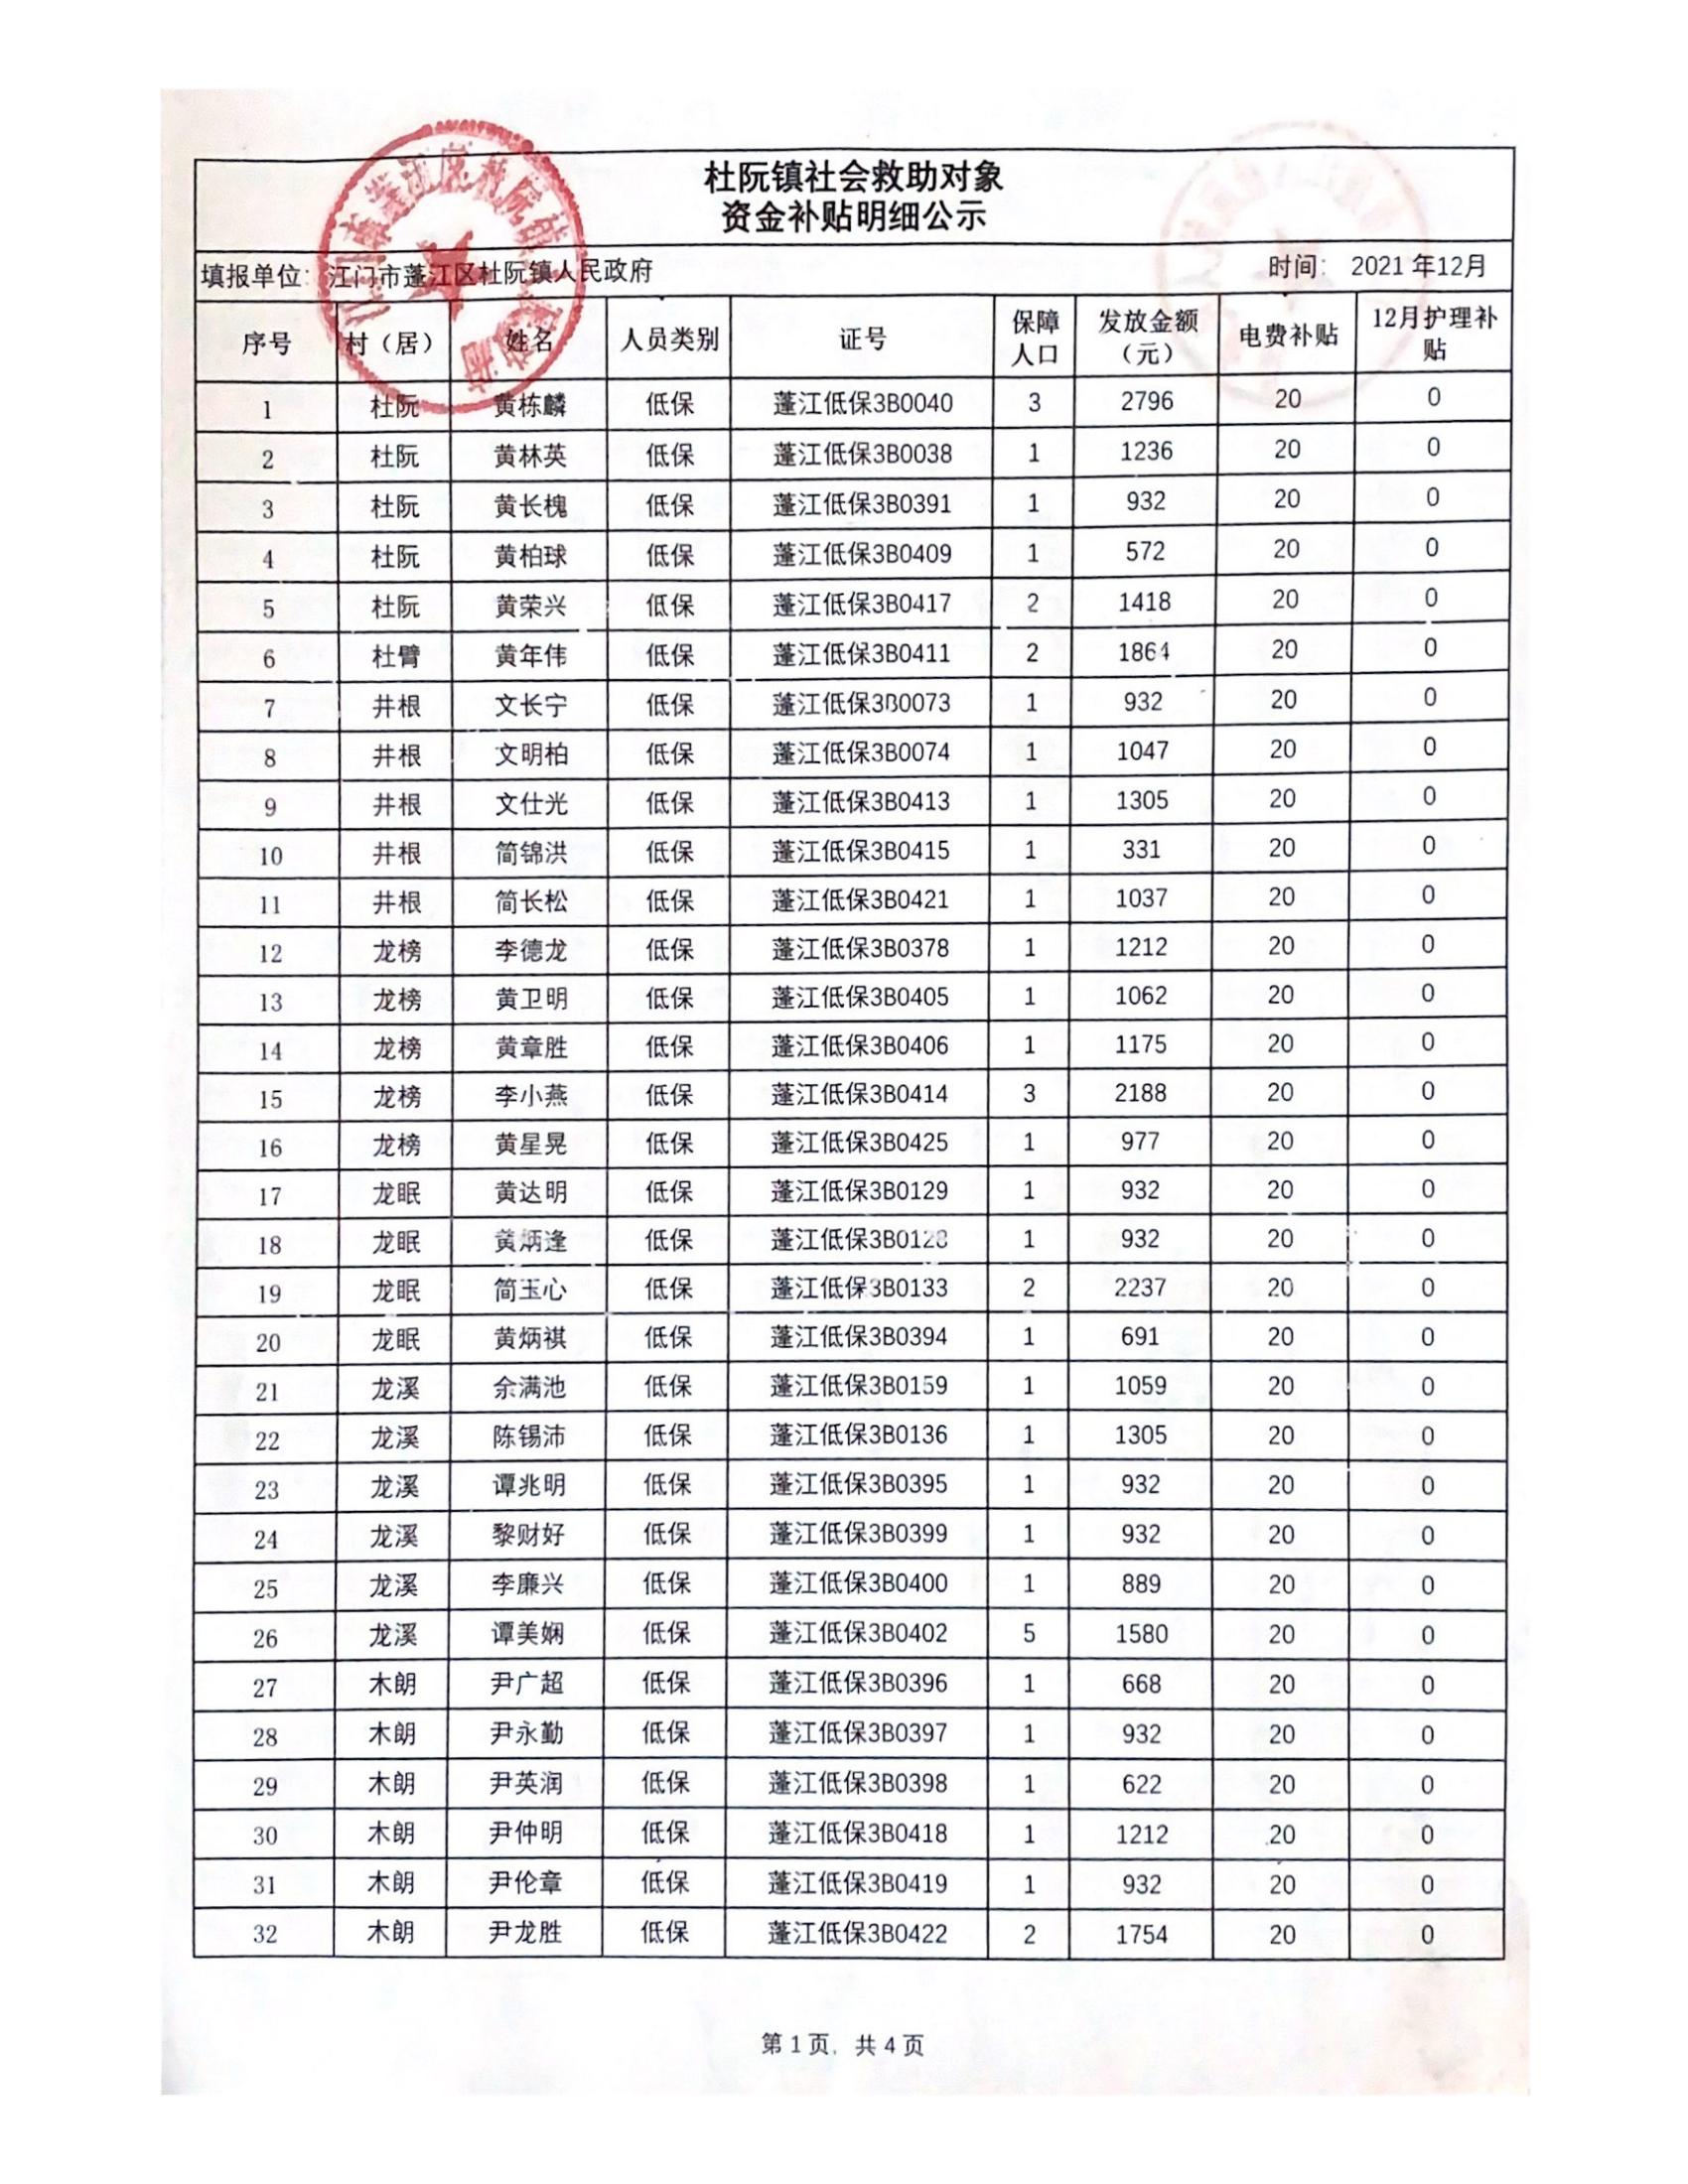 2021年12月杜阮镇社会救助对象资金补贴明细_00.jpg